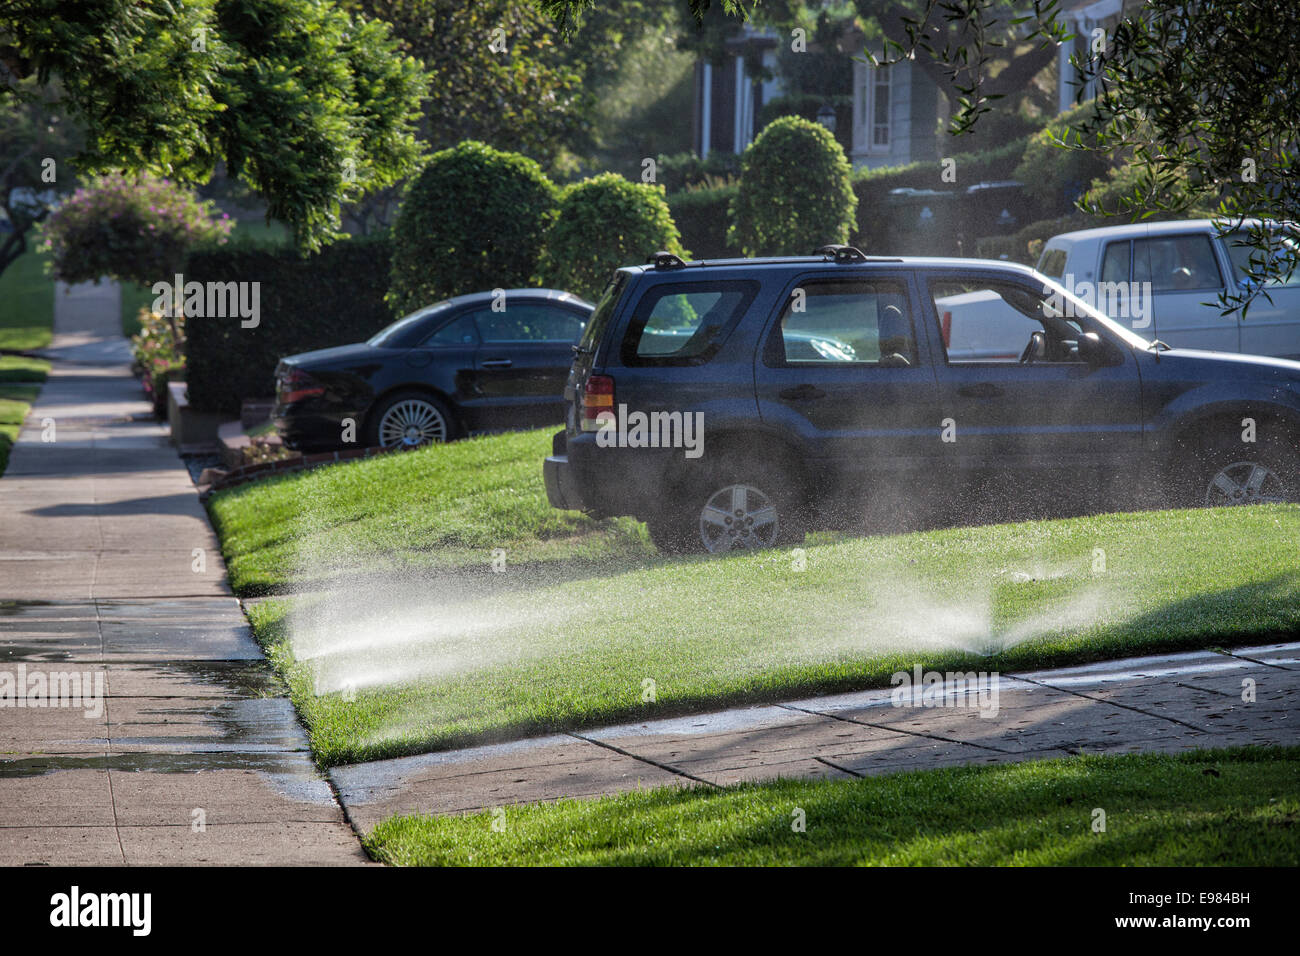 Les pelouses sont arrosées par des sprinkleurs au cours de la grave sécheresse de l'été 2014. Cheviot Hills, Los Angeles, Californie, USA Banque D'Images